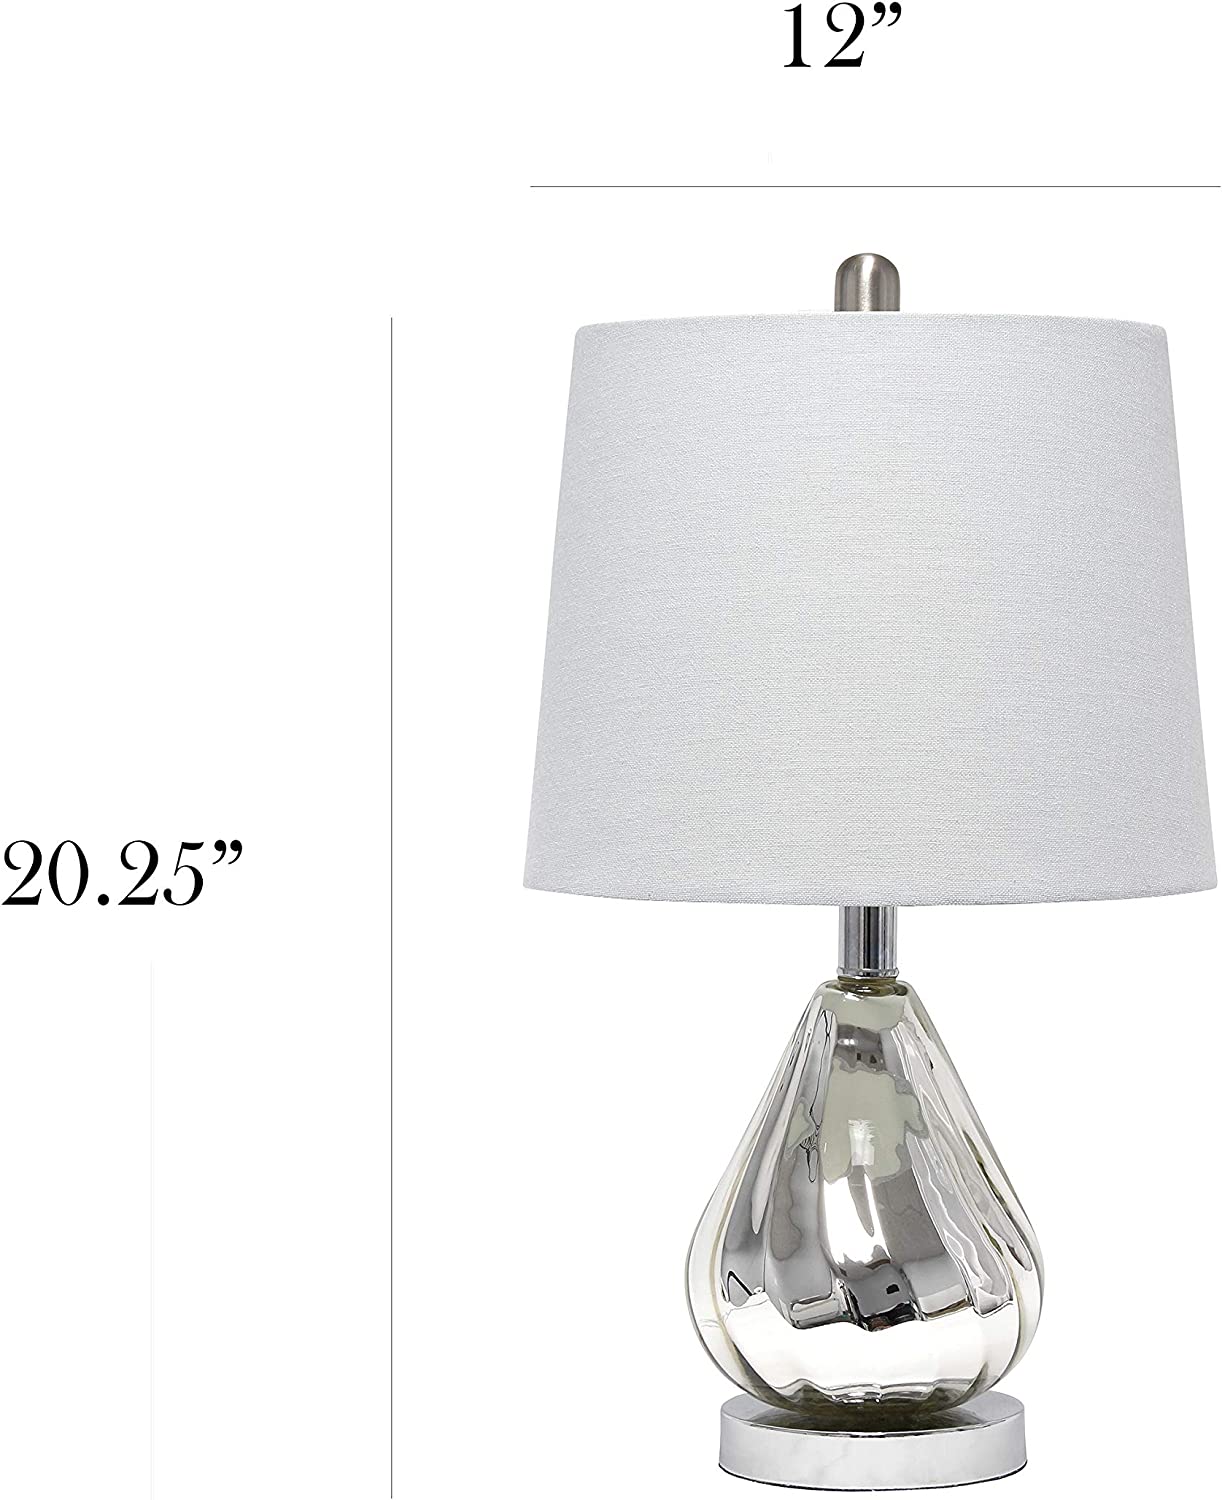 Elegant Designs LT3319-WHT Ripple Table Lamp, Chrome/White